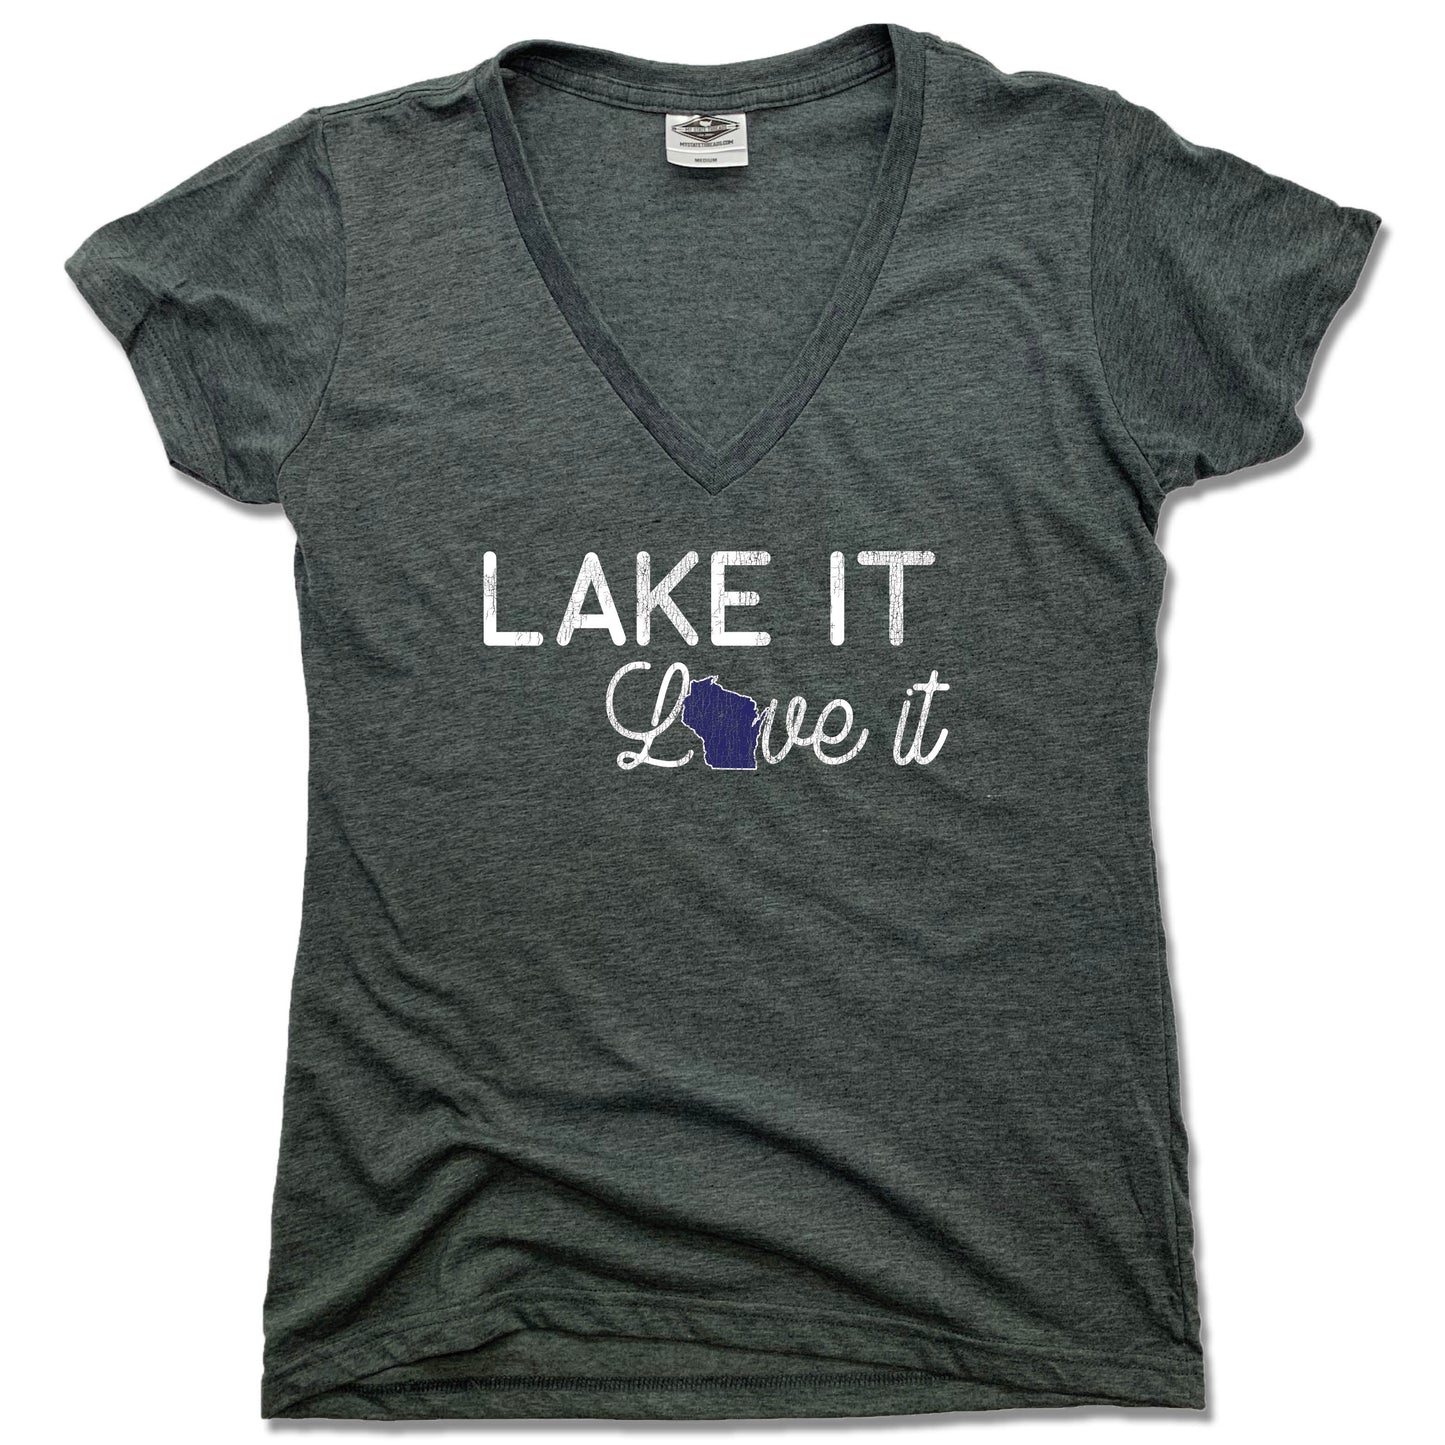 Wisconsin Lake it Love it - Ladies' Tee